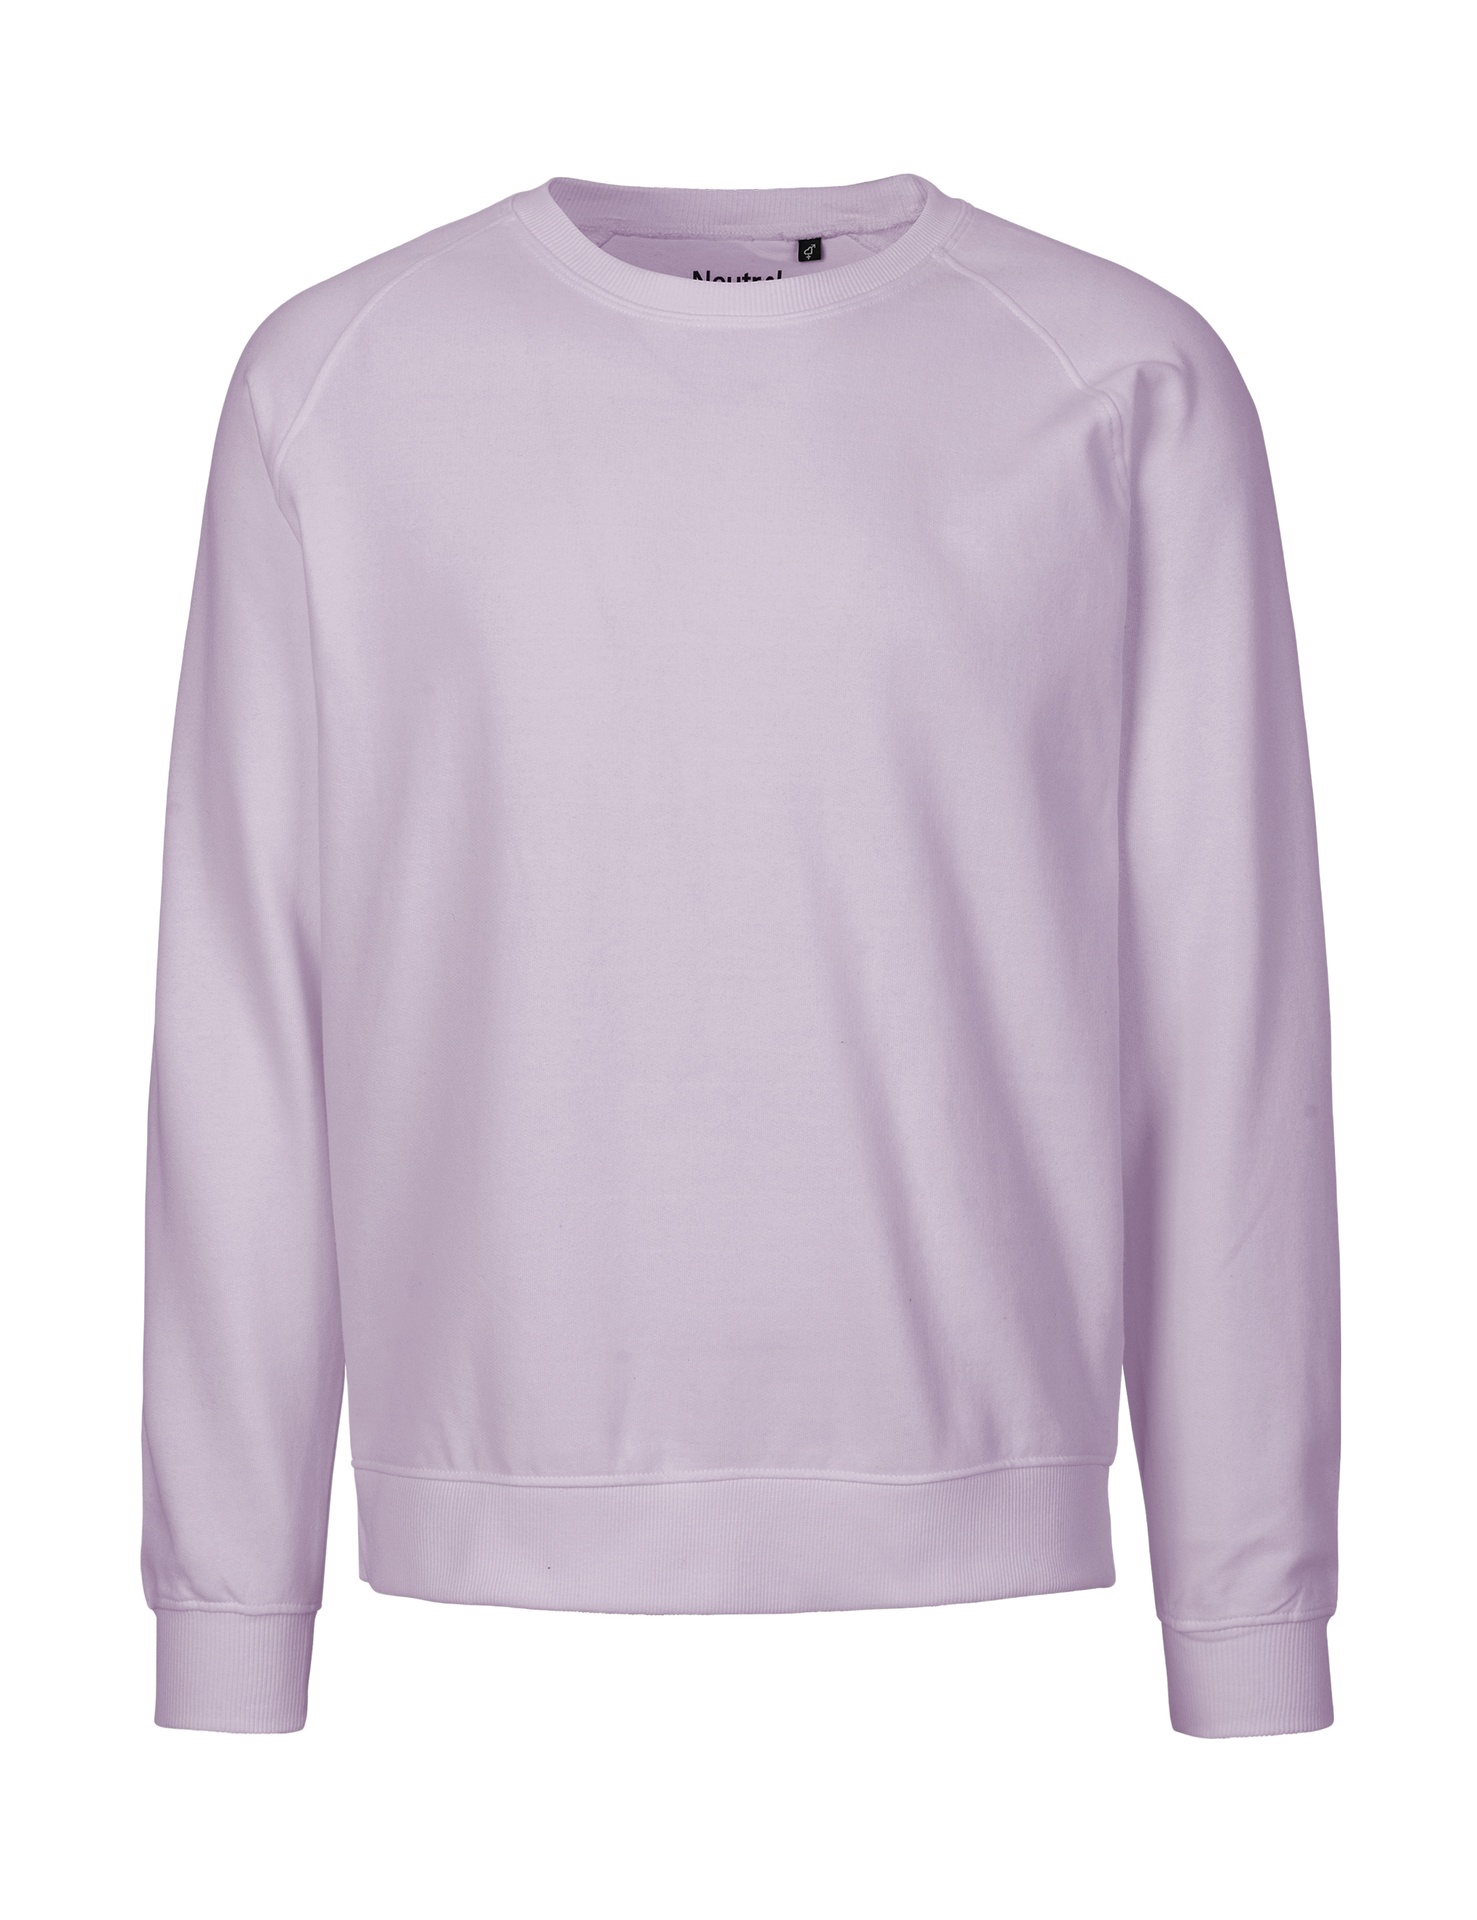 [PR/02842] Unisex Sweatshirt (Dusty Purple 42, S)